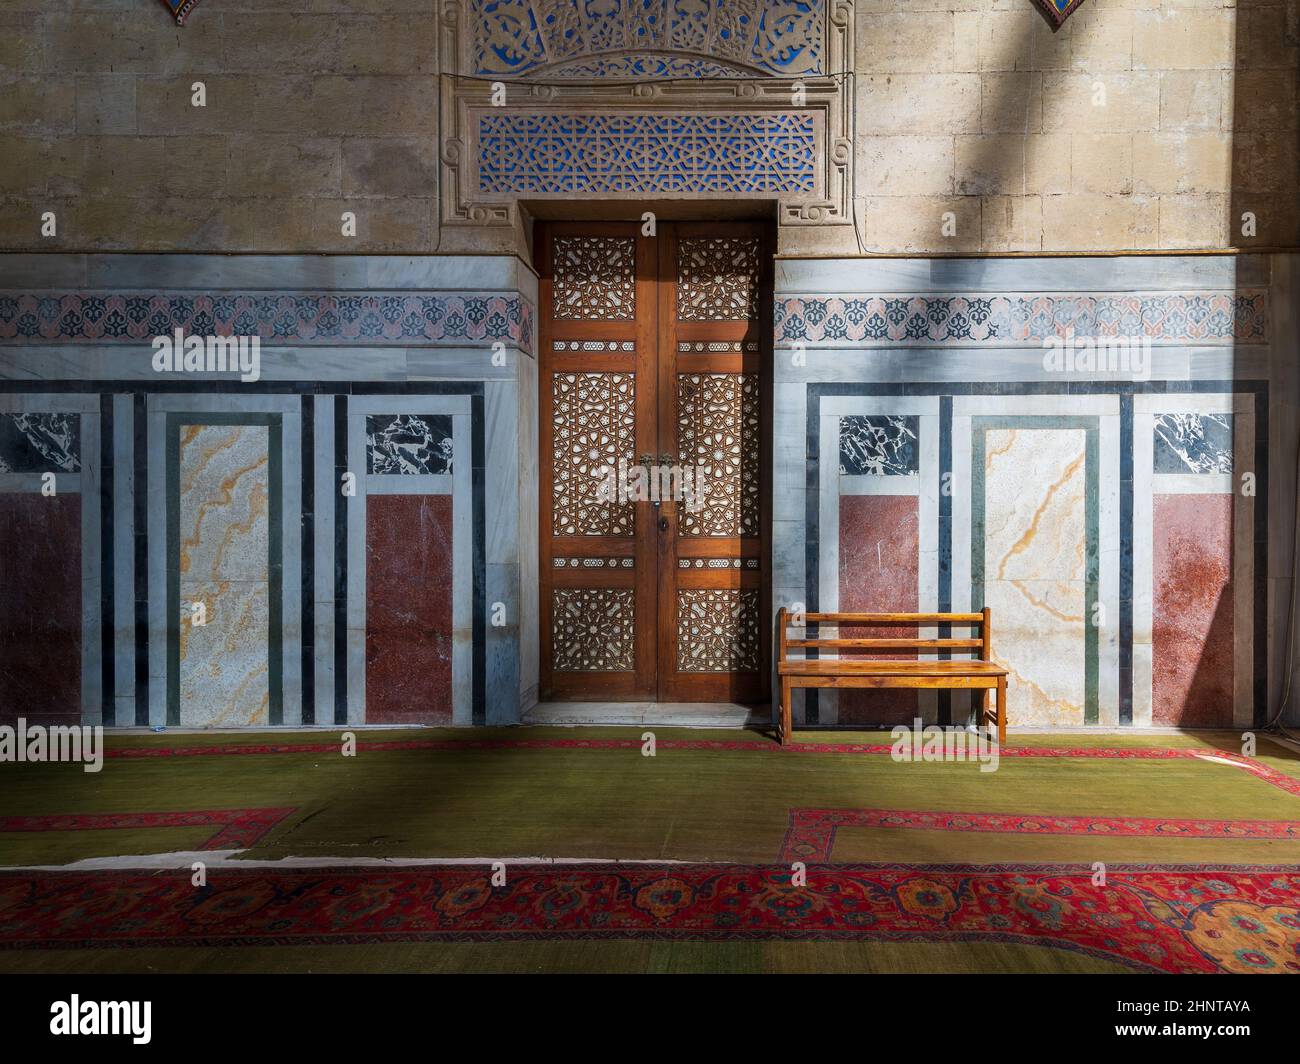 Porte en bois ornementale, murs décorés de mosaïques, banc en bois et sol éclairé par des poutres apparentes, mosquée Al Rifai, le Caire, Égypte Banque D'Images